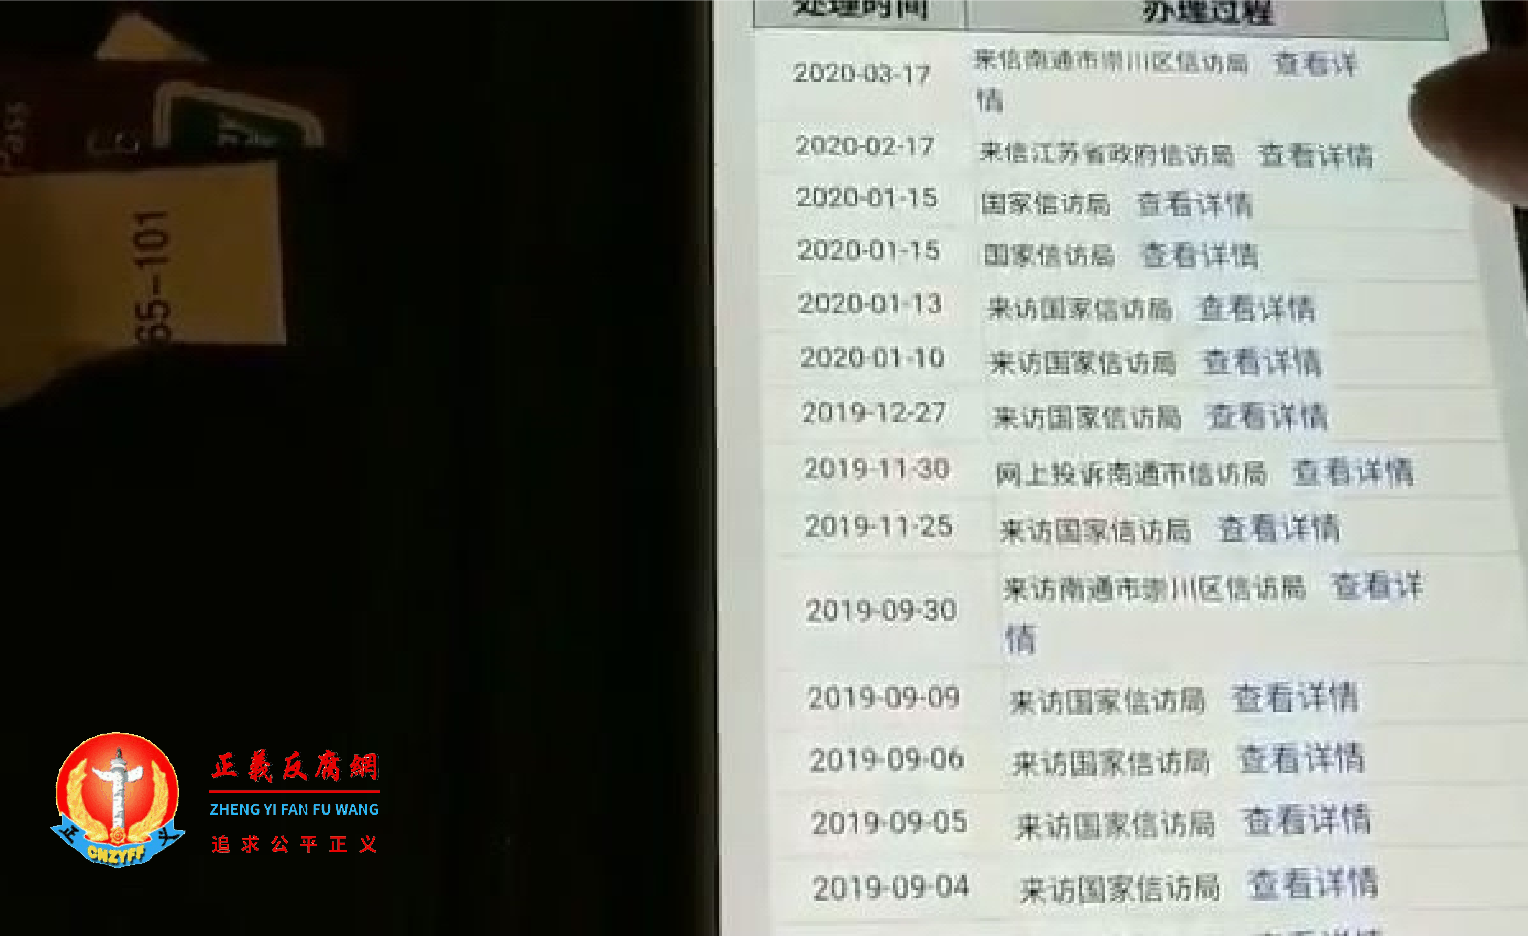 江苏南通访民张金山的网上信访投诉账号，发现里面数十条信访记录都是他人的，而他本人的信访记录却未见登记。.png